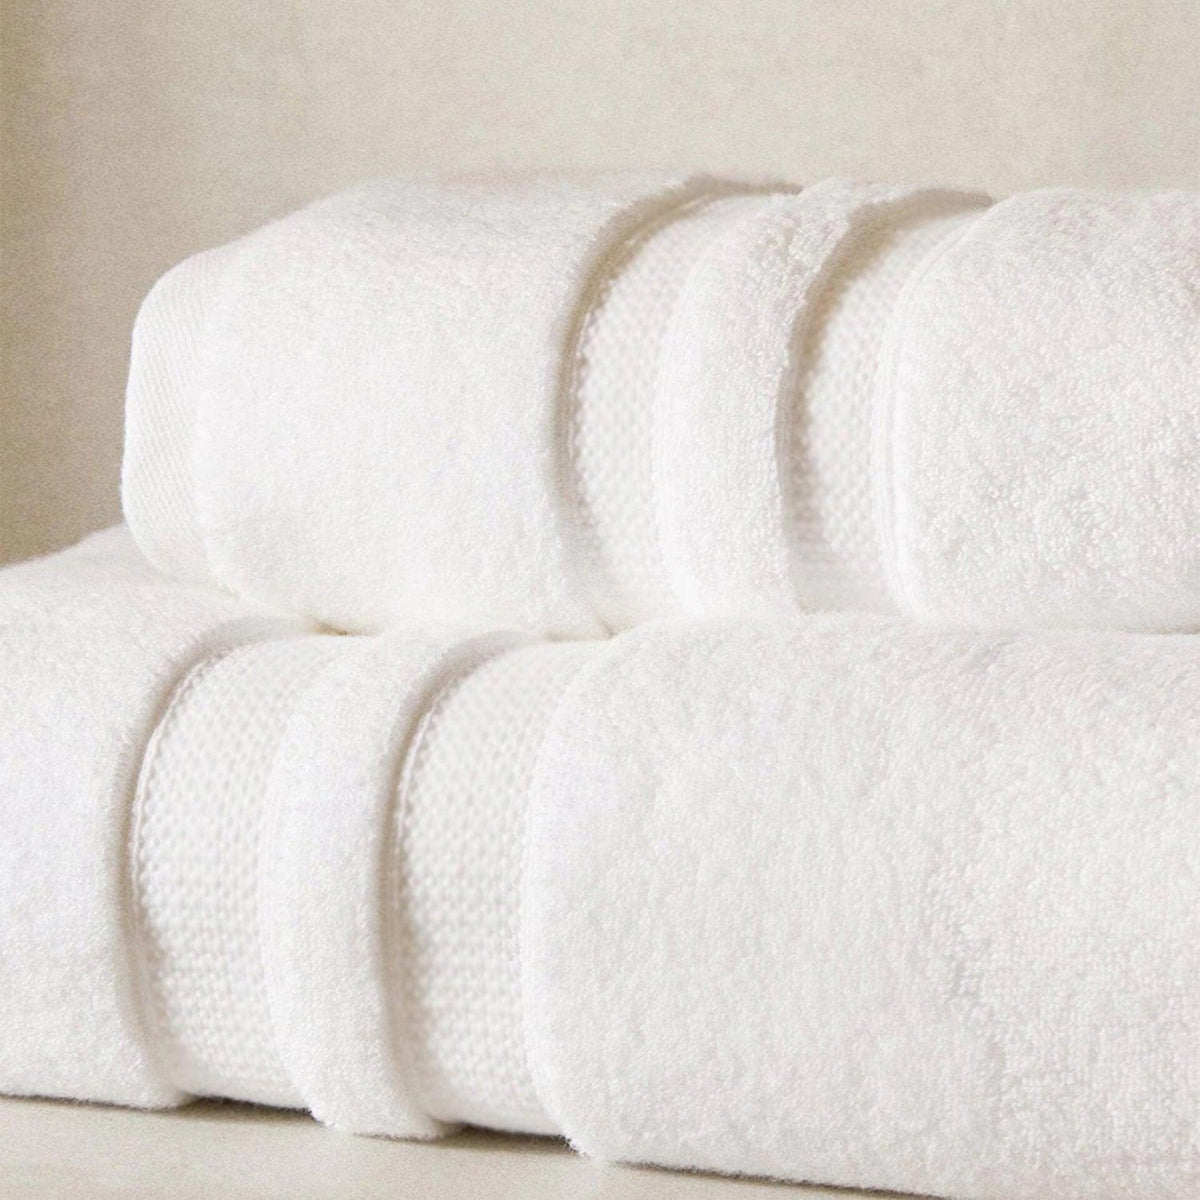 Cotton Bath Towel Pack of 2 - White - beddingbag.com